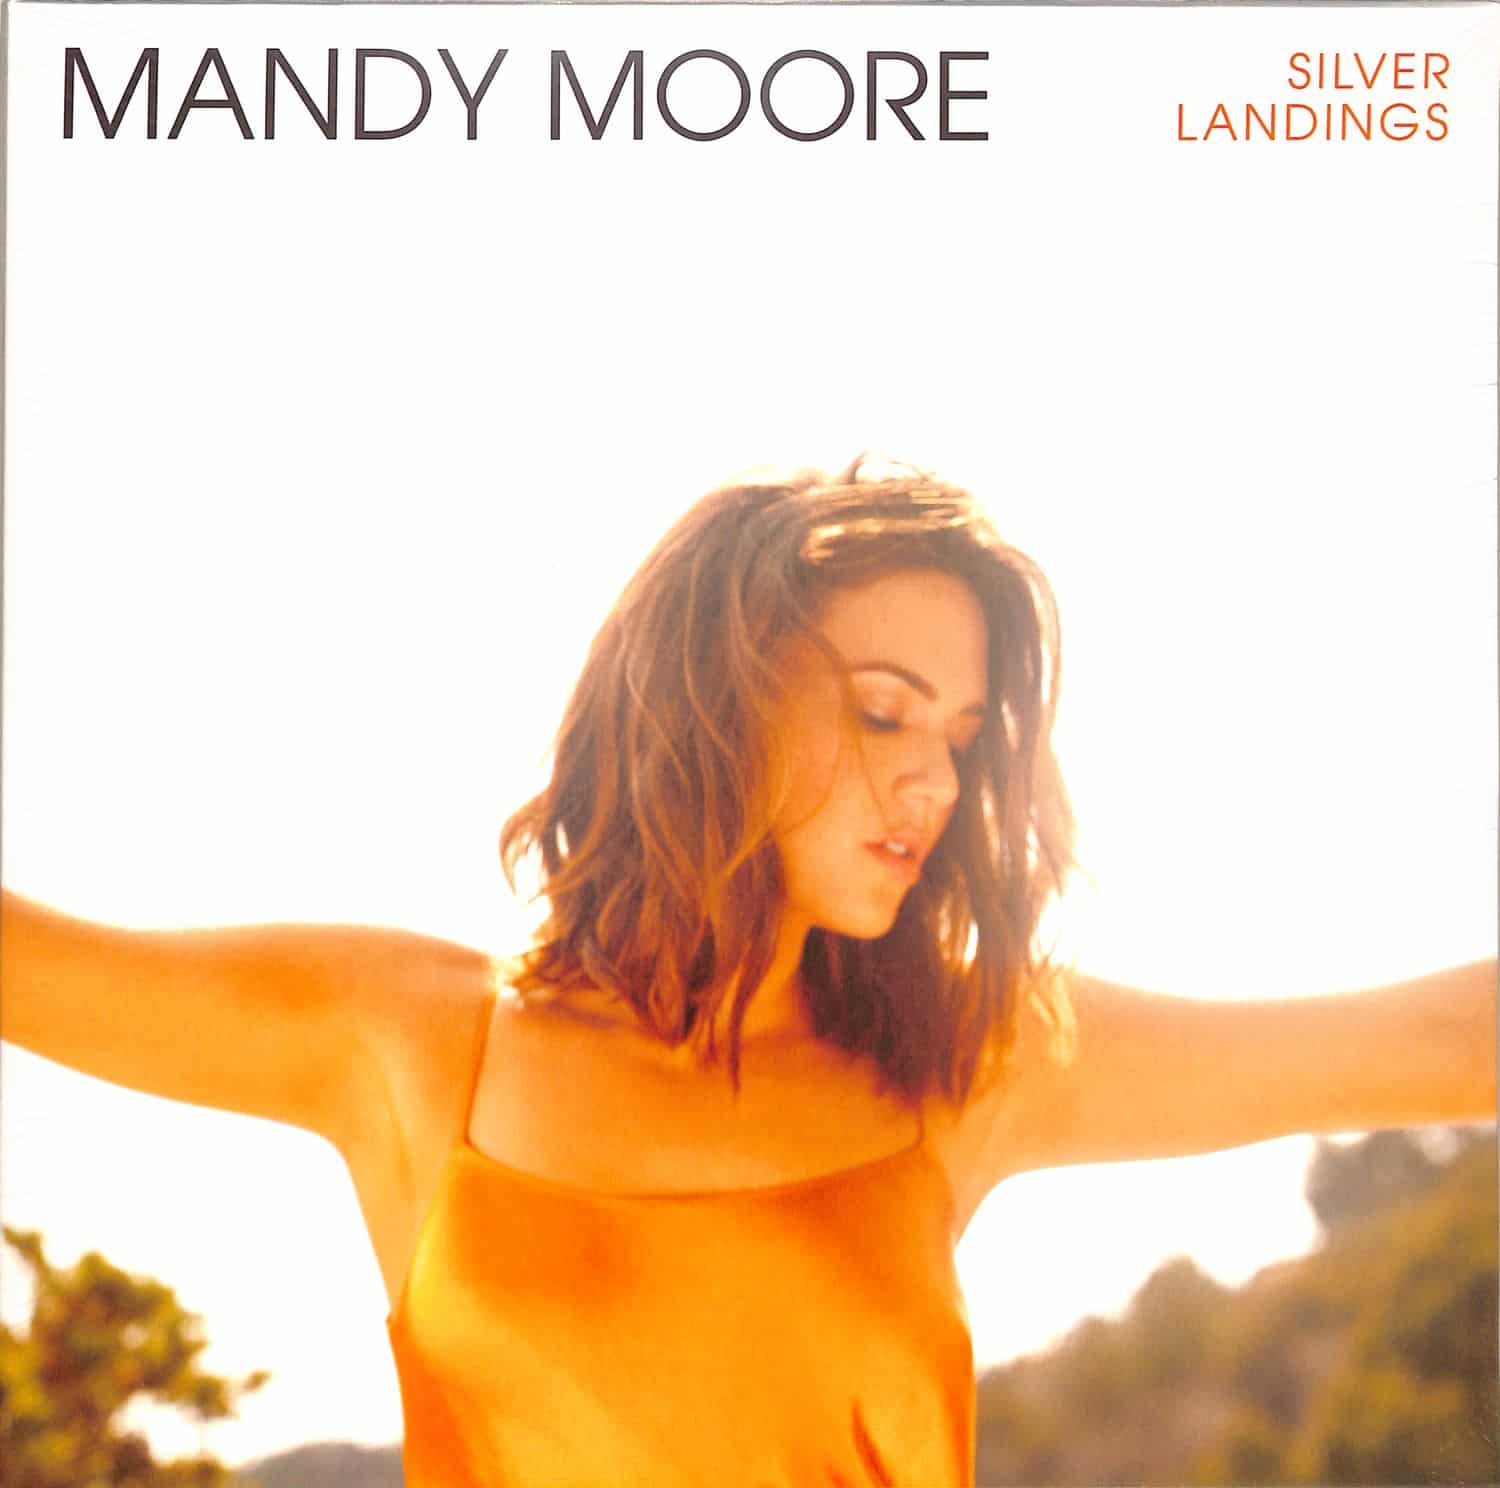 Mandy Moore - SILVER LANDINGS 